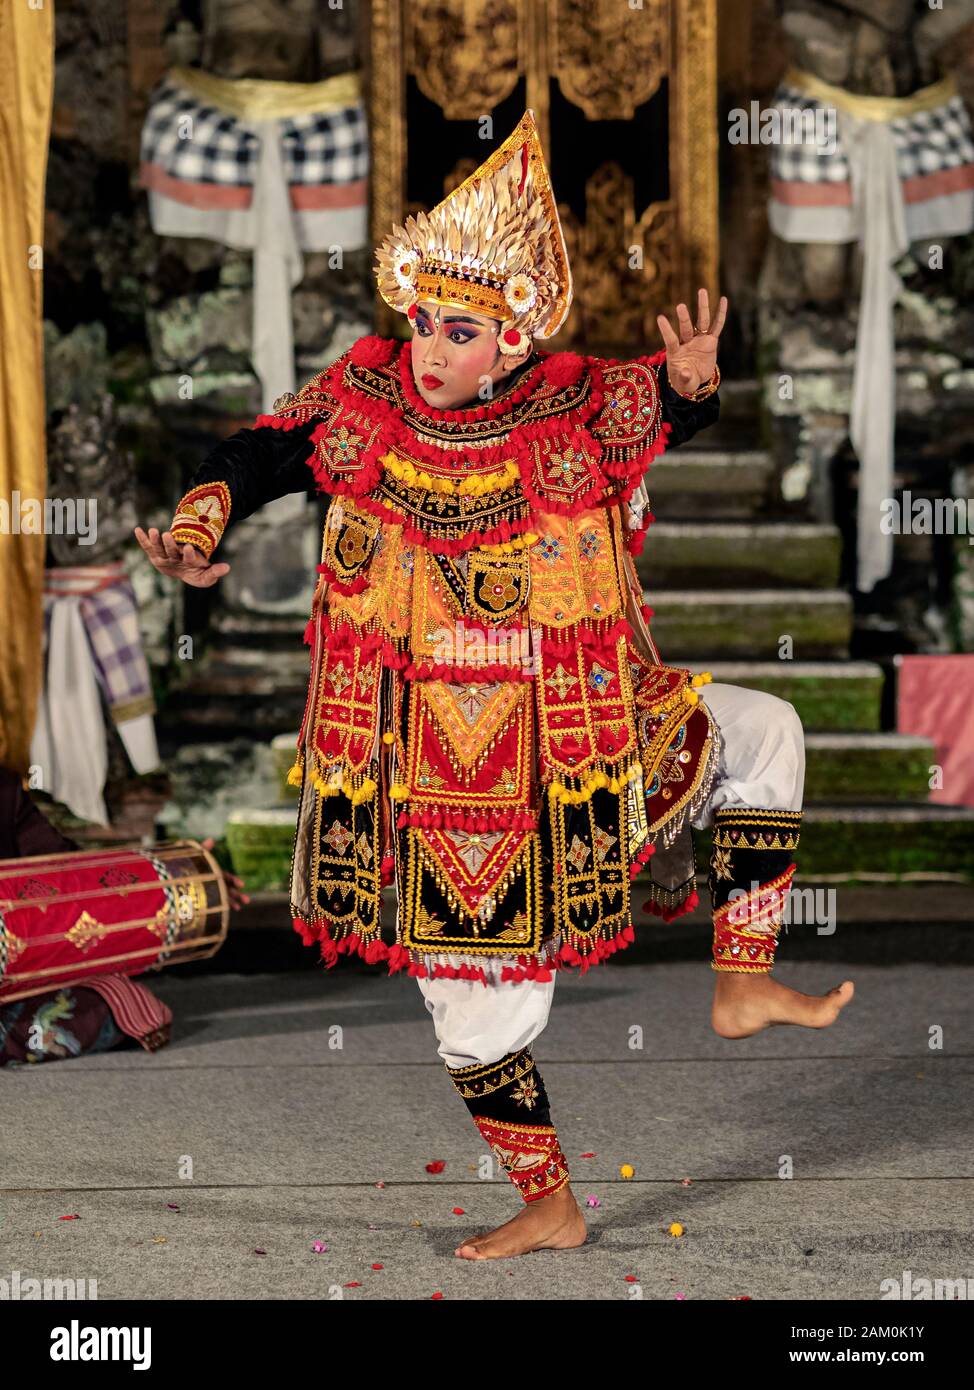 Un joven balinés bailando el guerrero barí con trajes tradicionales en el templo Pura Saraswati en Ubud, Bali, Indonesia. Foto de stock